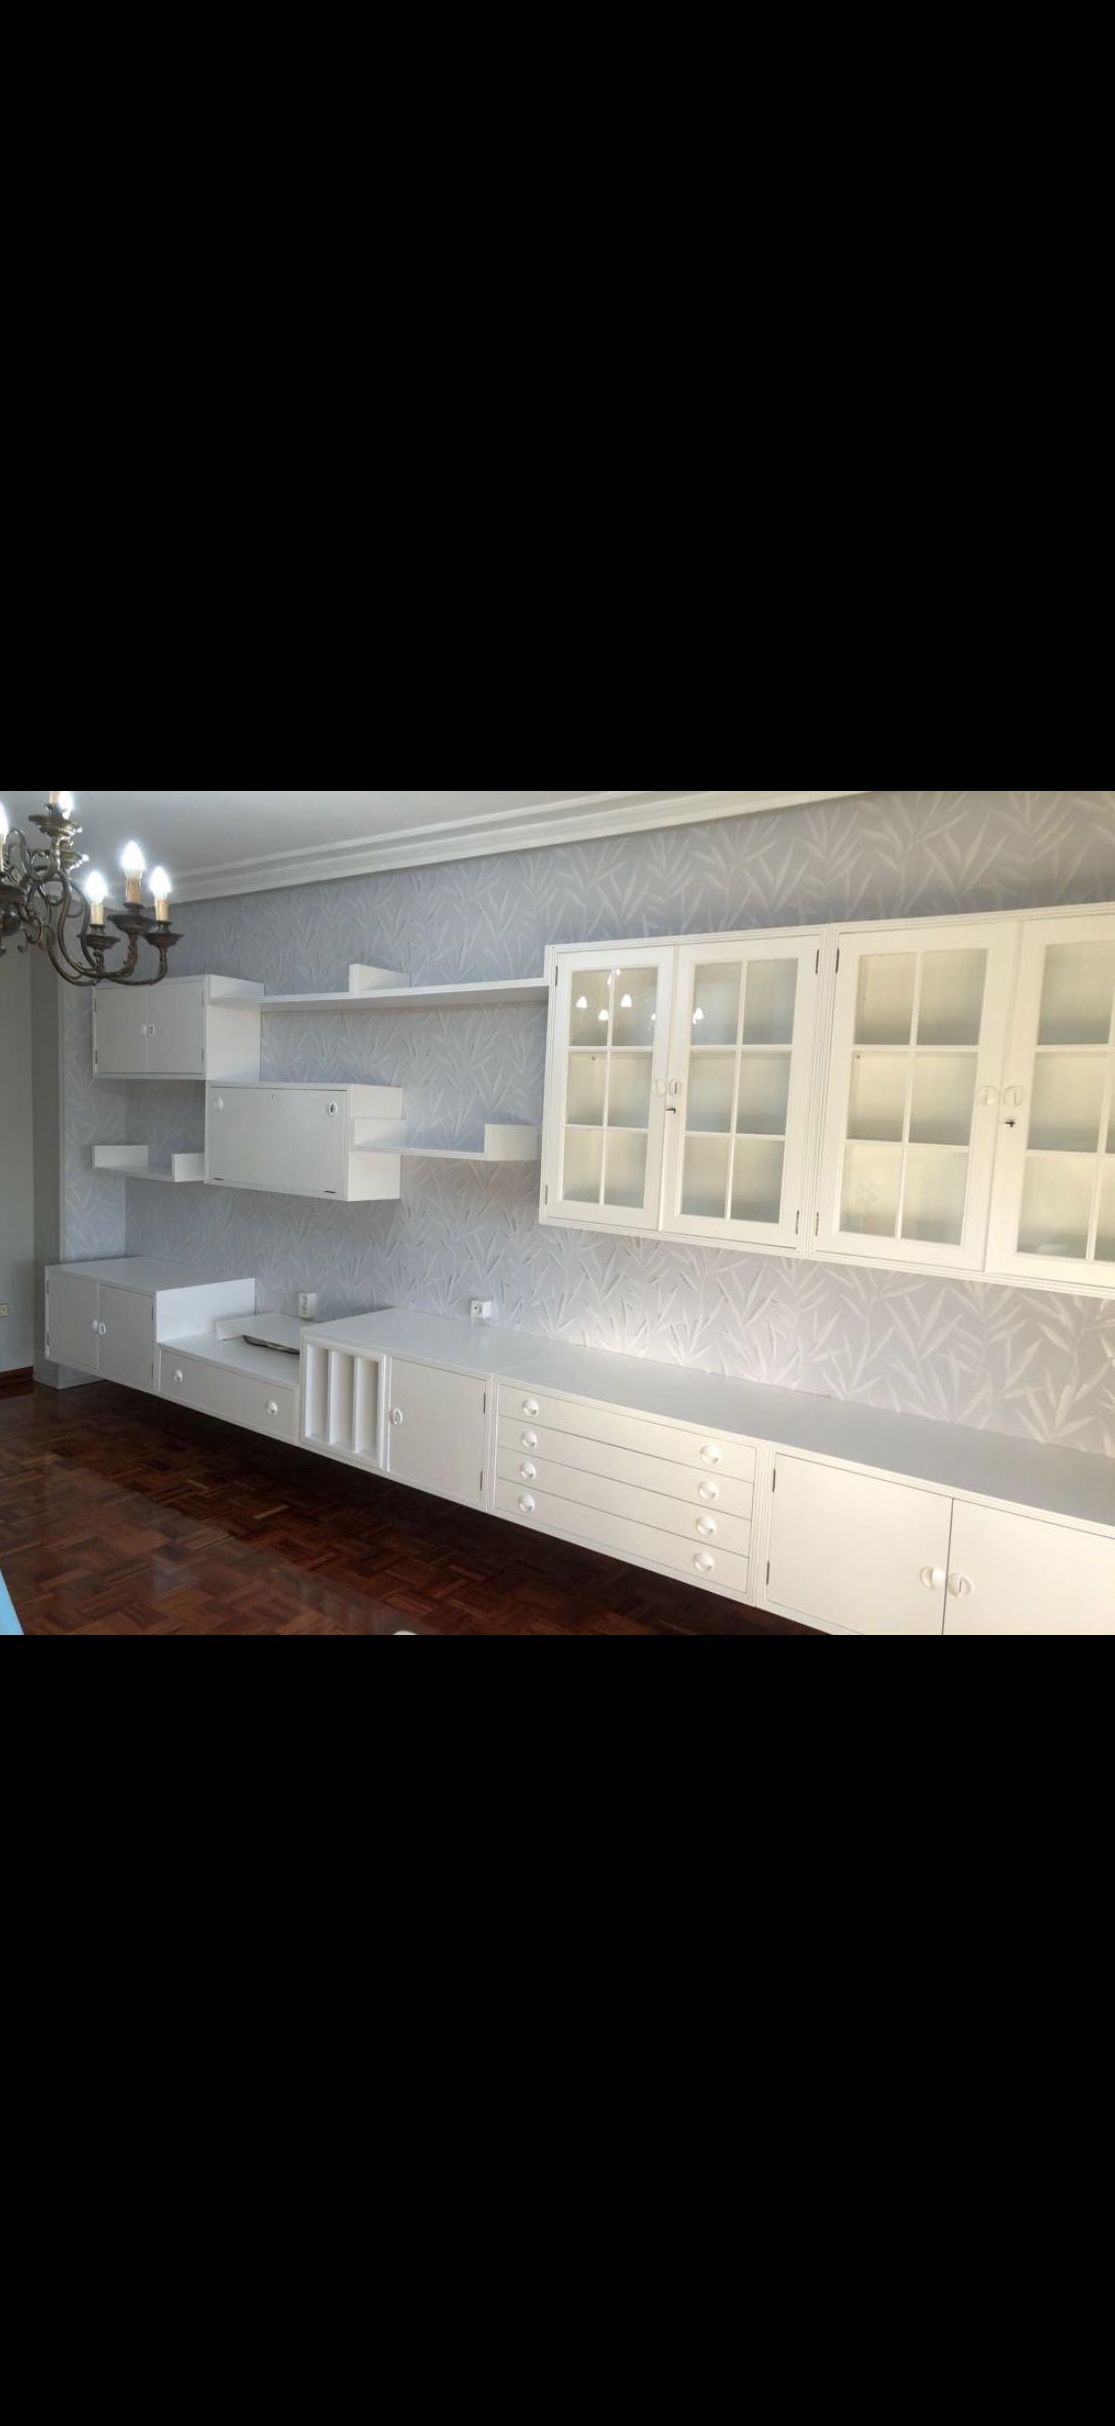 Mueble restaurado y barnizado en color blanco